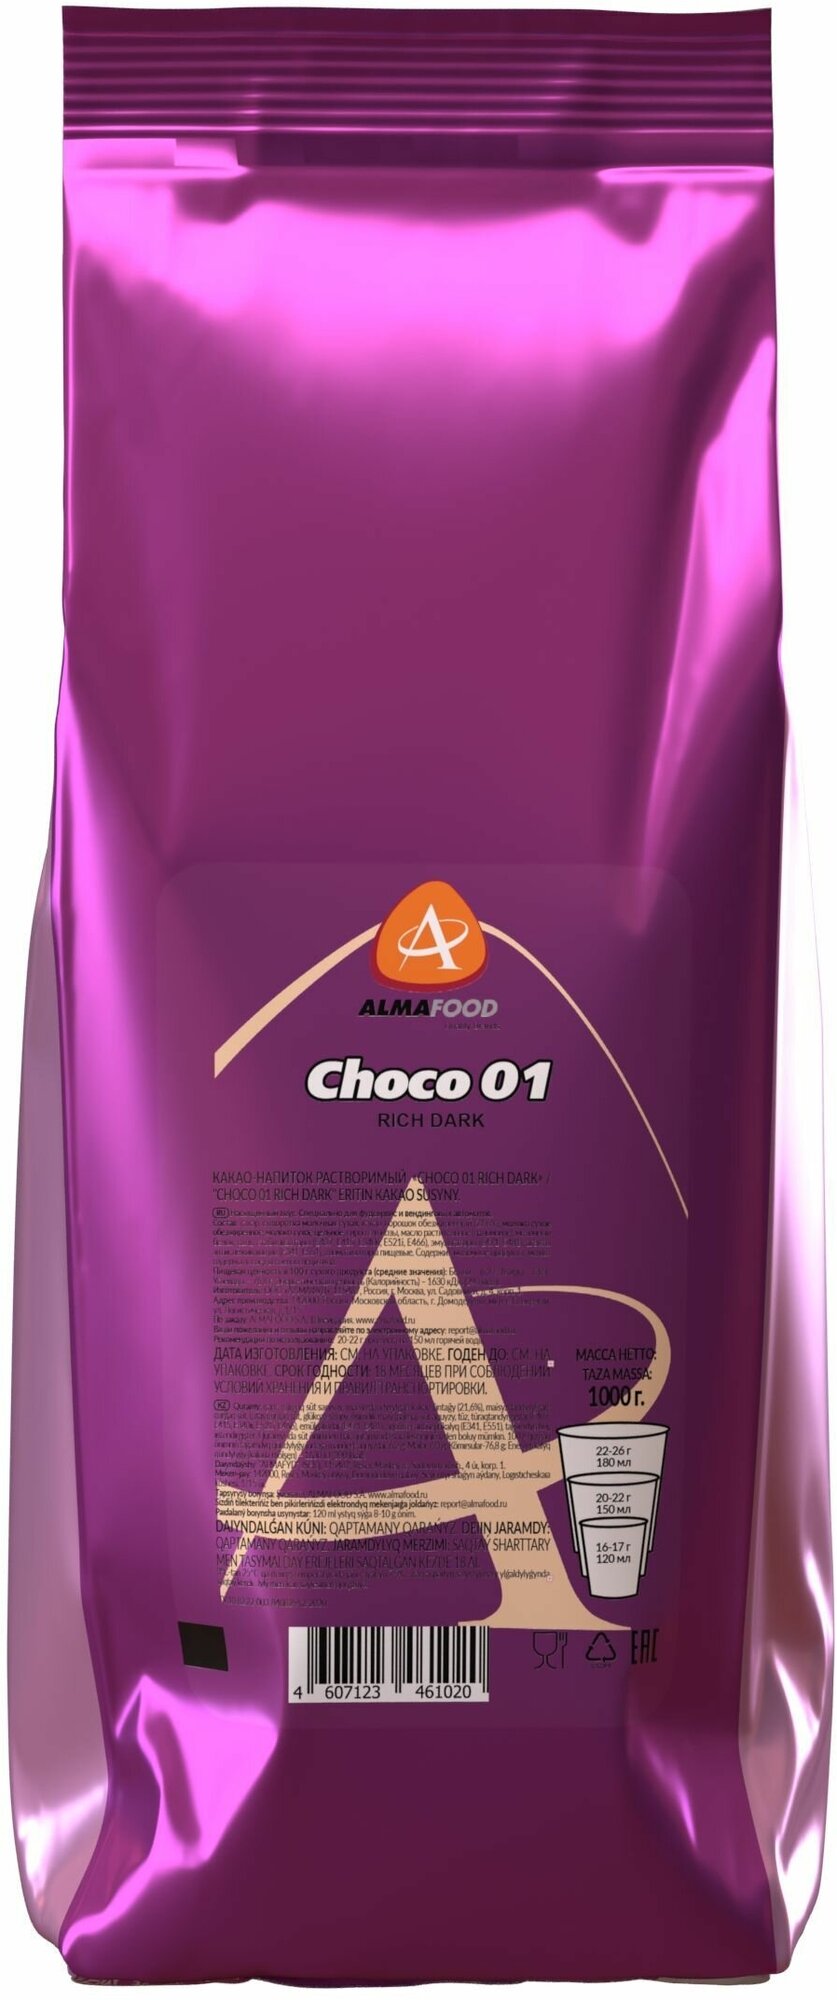 Горячий шоколад Almafood CHOCO 01 RICH DARK для вендинга растворимый напиток 1 кг